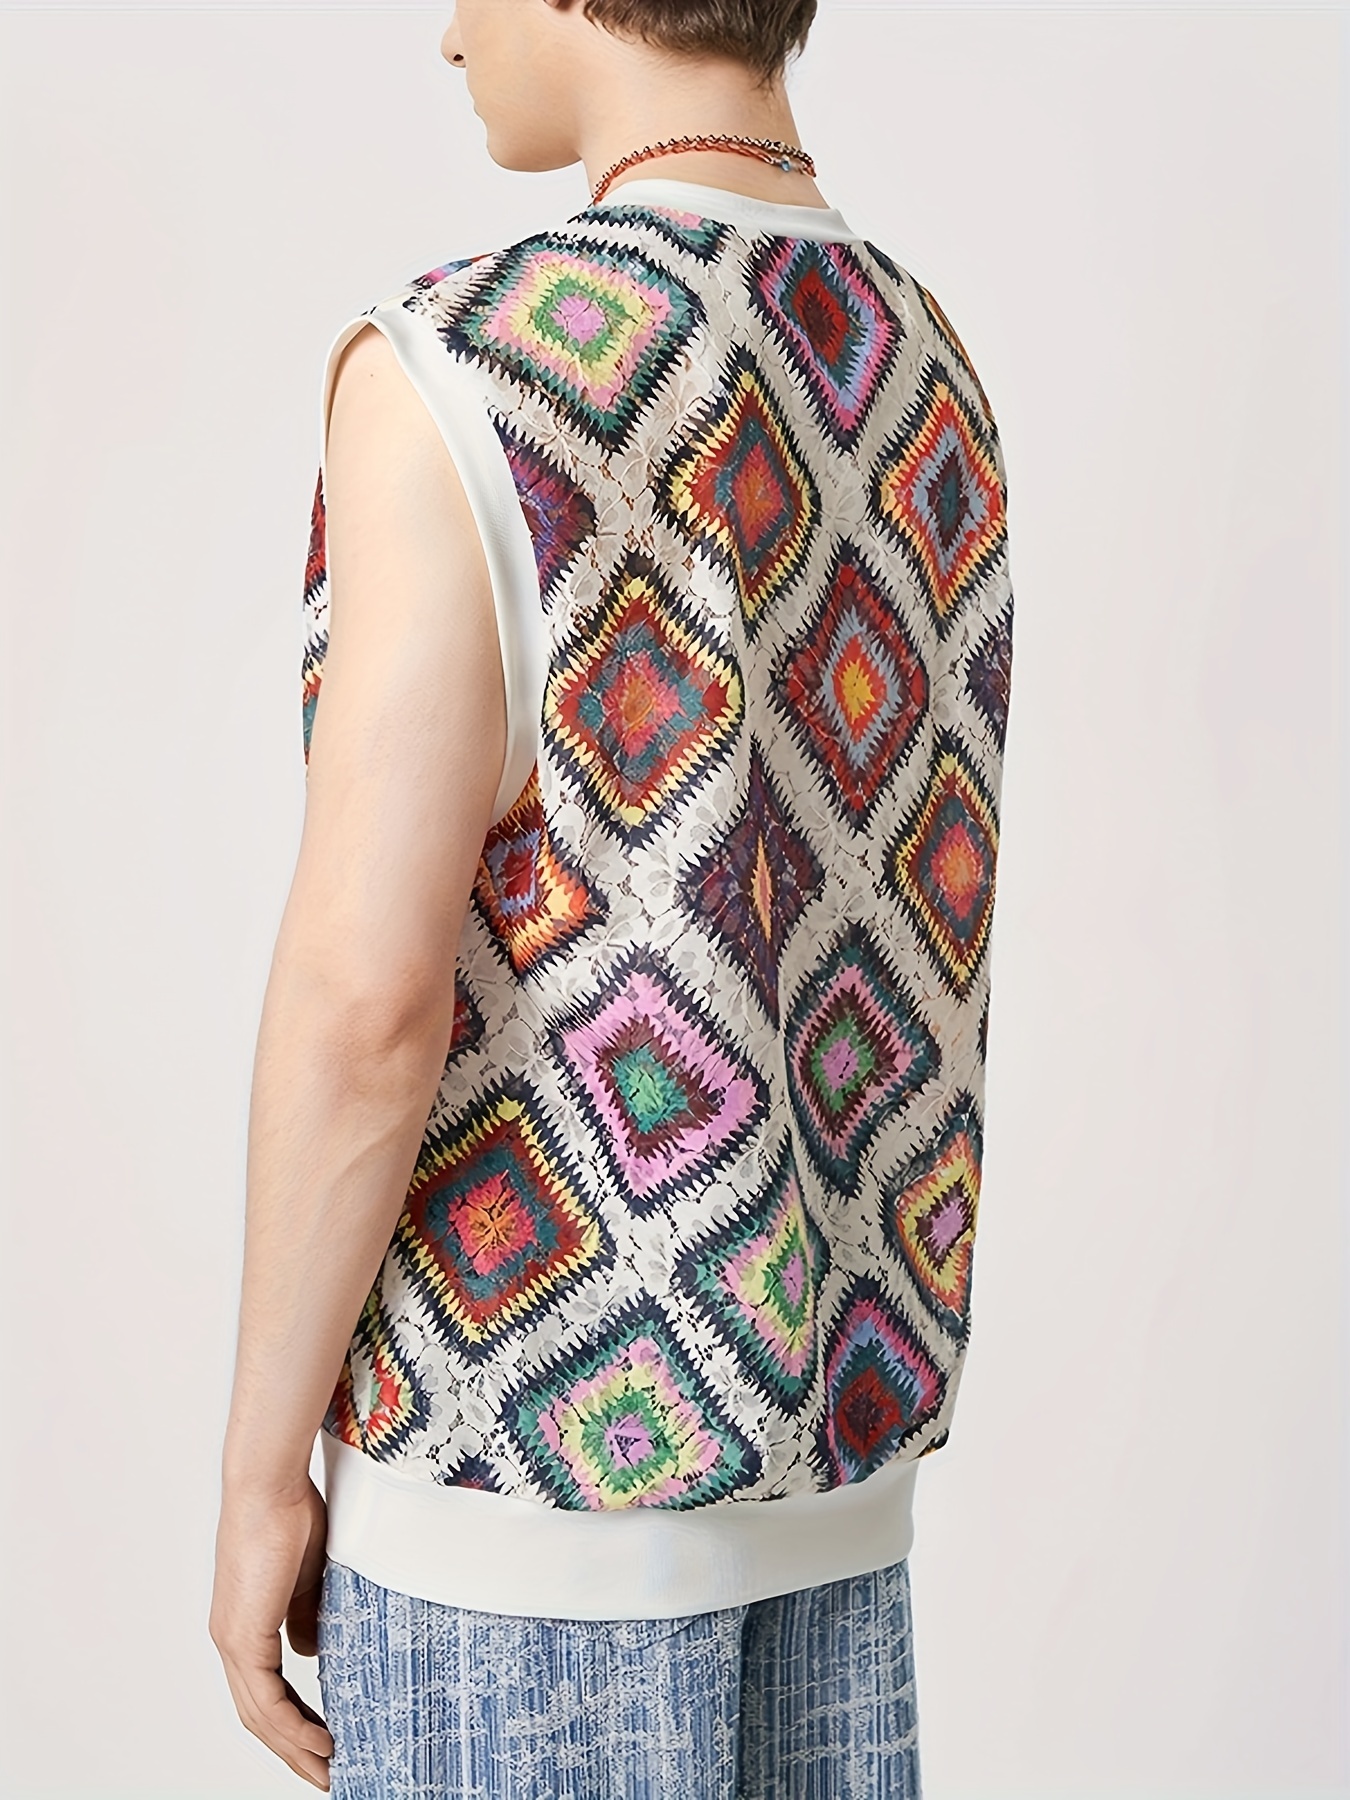 CLZOUD Young La Tank Tops Men Red Male Spring Summer Vest Print Pattern  Round Neck Plus Size Comfortable Vest L 